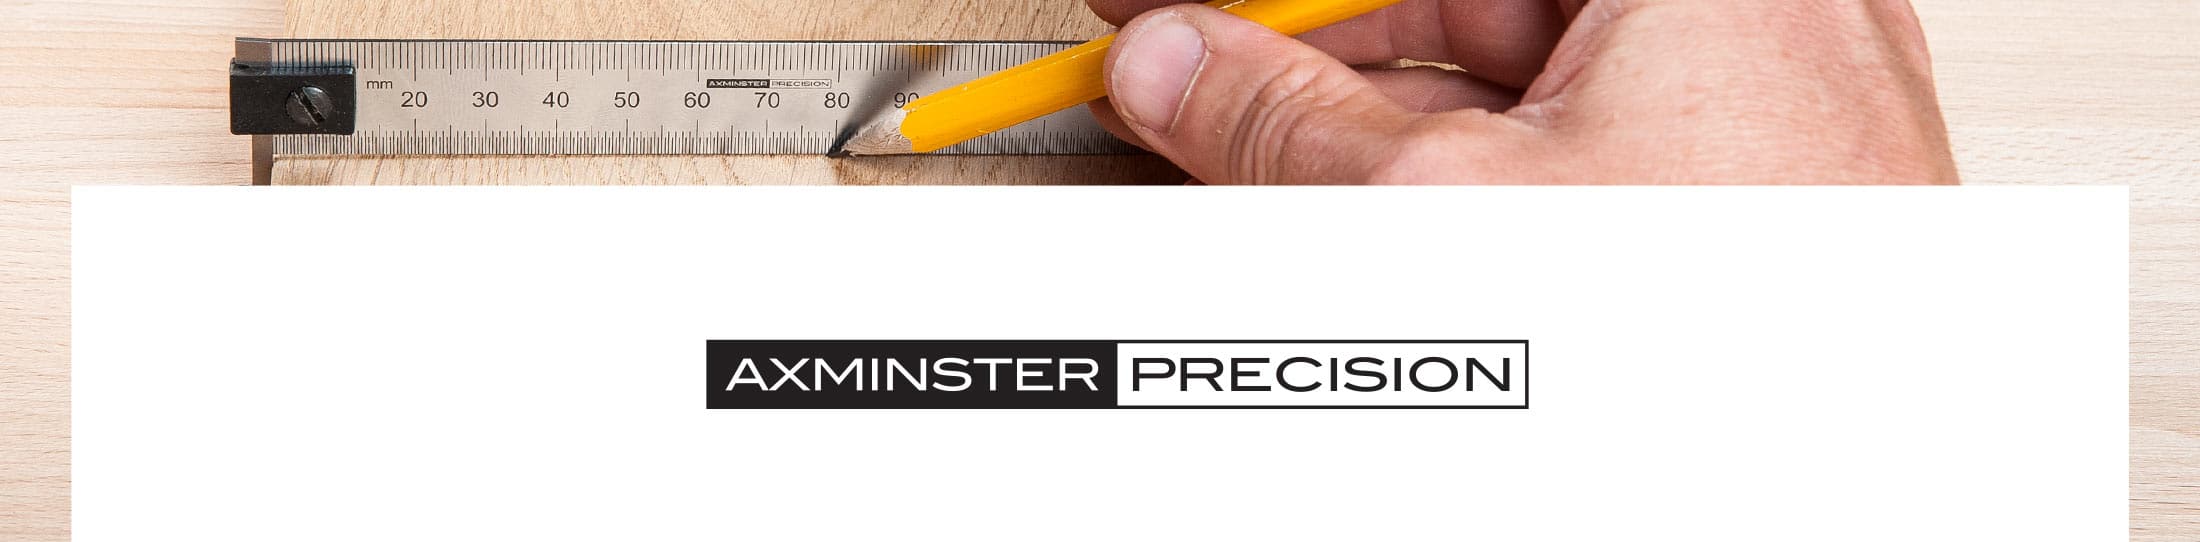 Axminster Precision